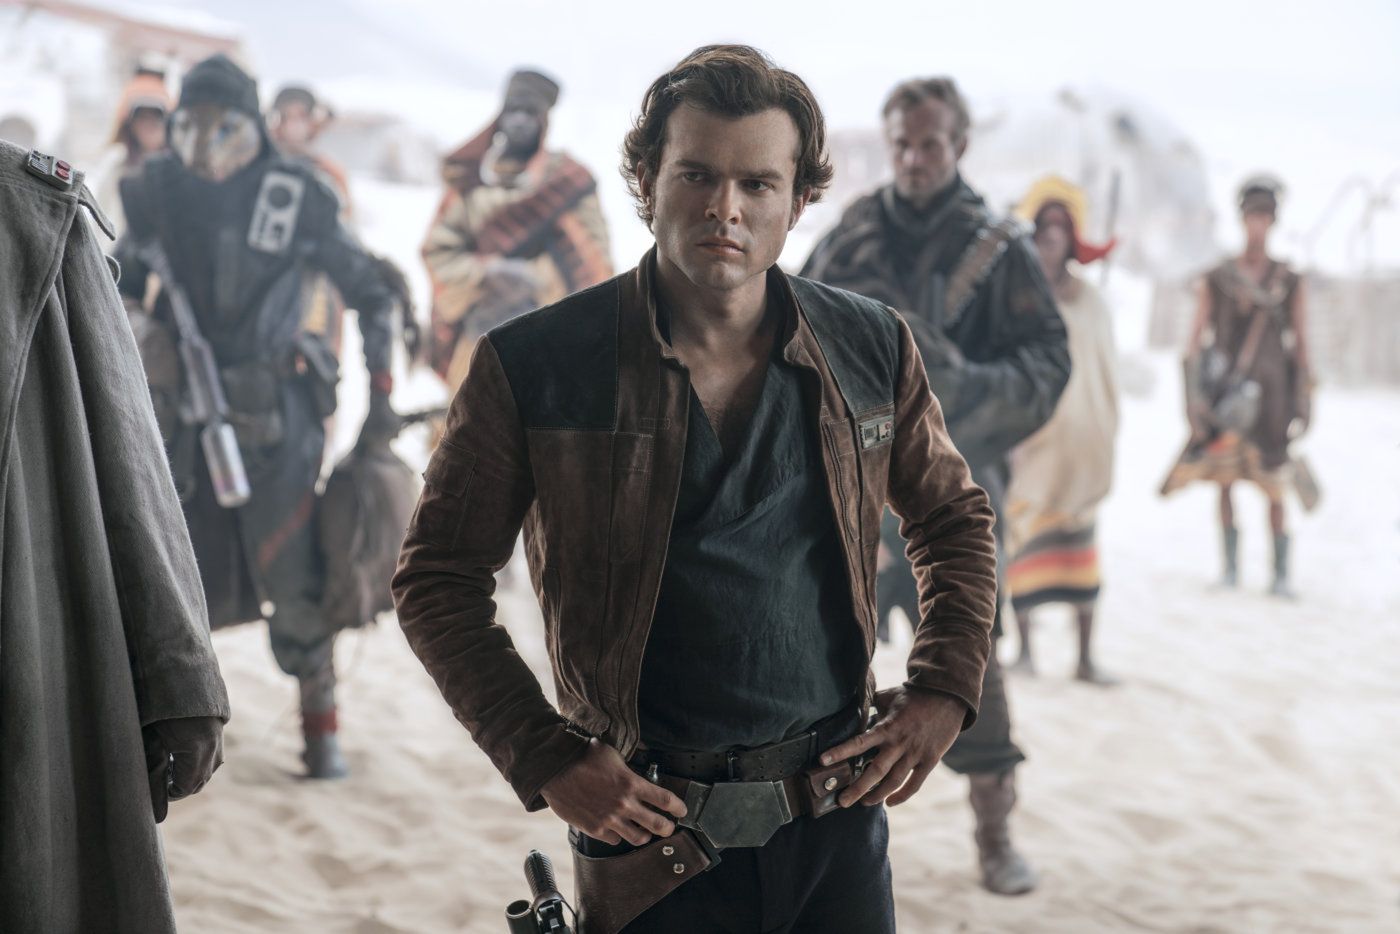 "Han Solo: Gwiezdne wojny - historie" wkrótce na DVD i Blu-ray. Zobacz zwiastun!